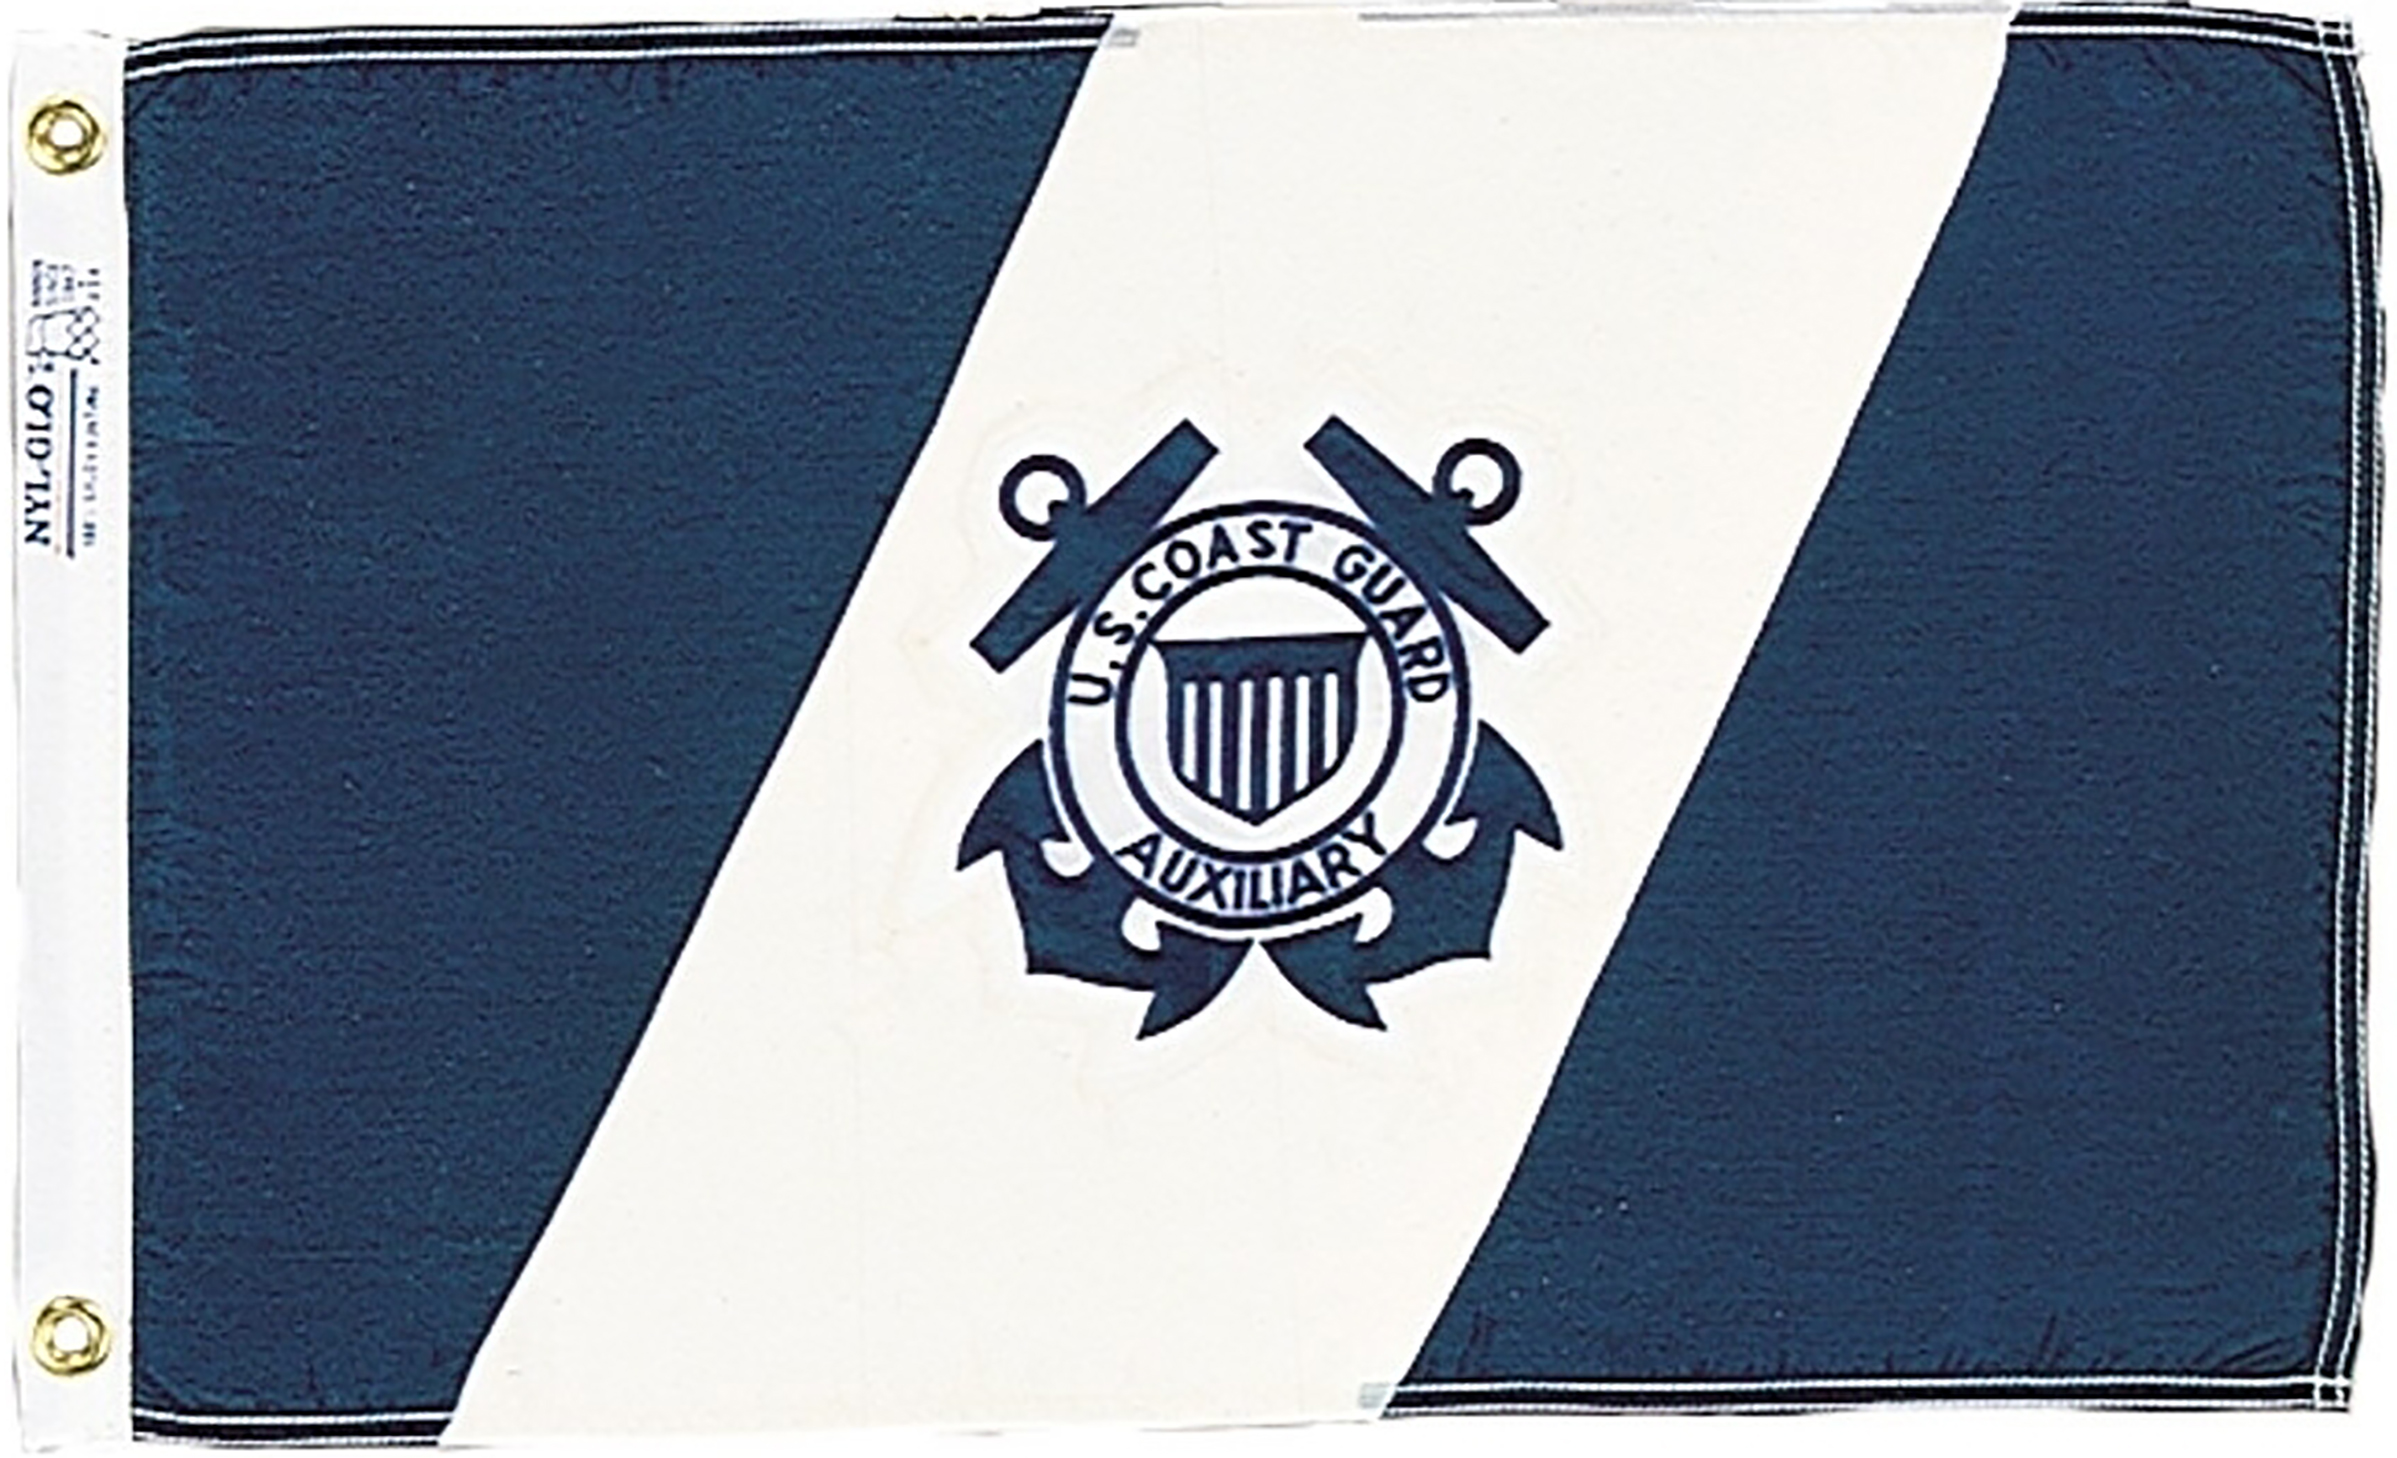 US Coast Guard Auxiliary Flags